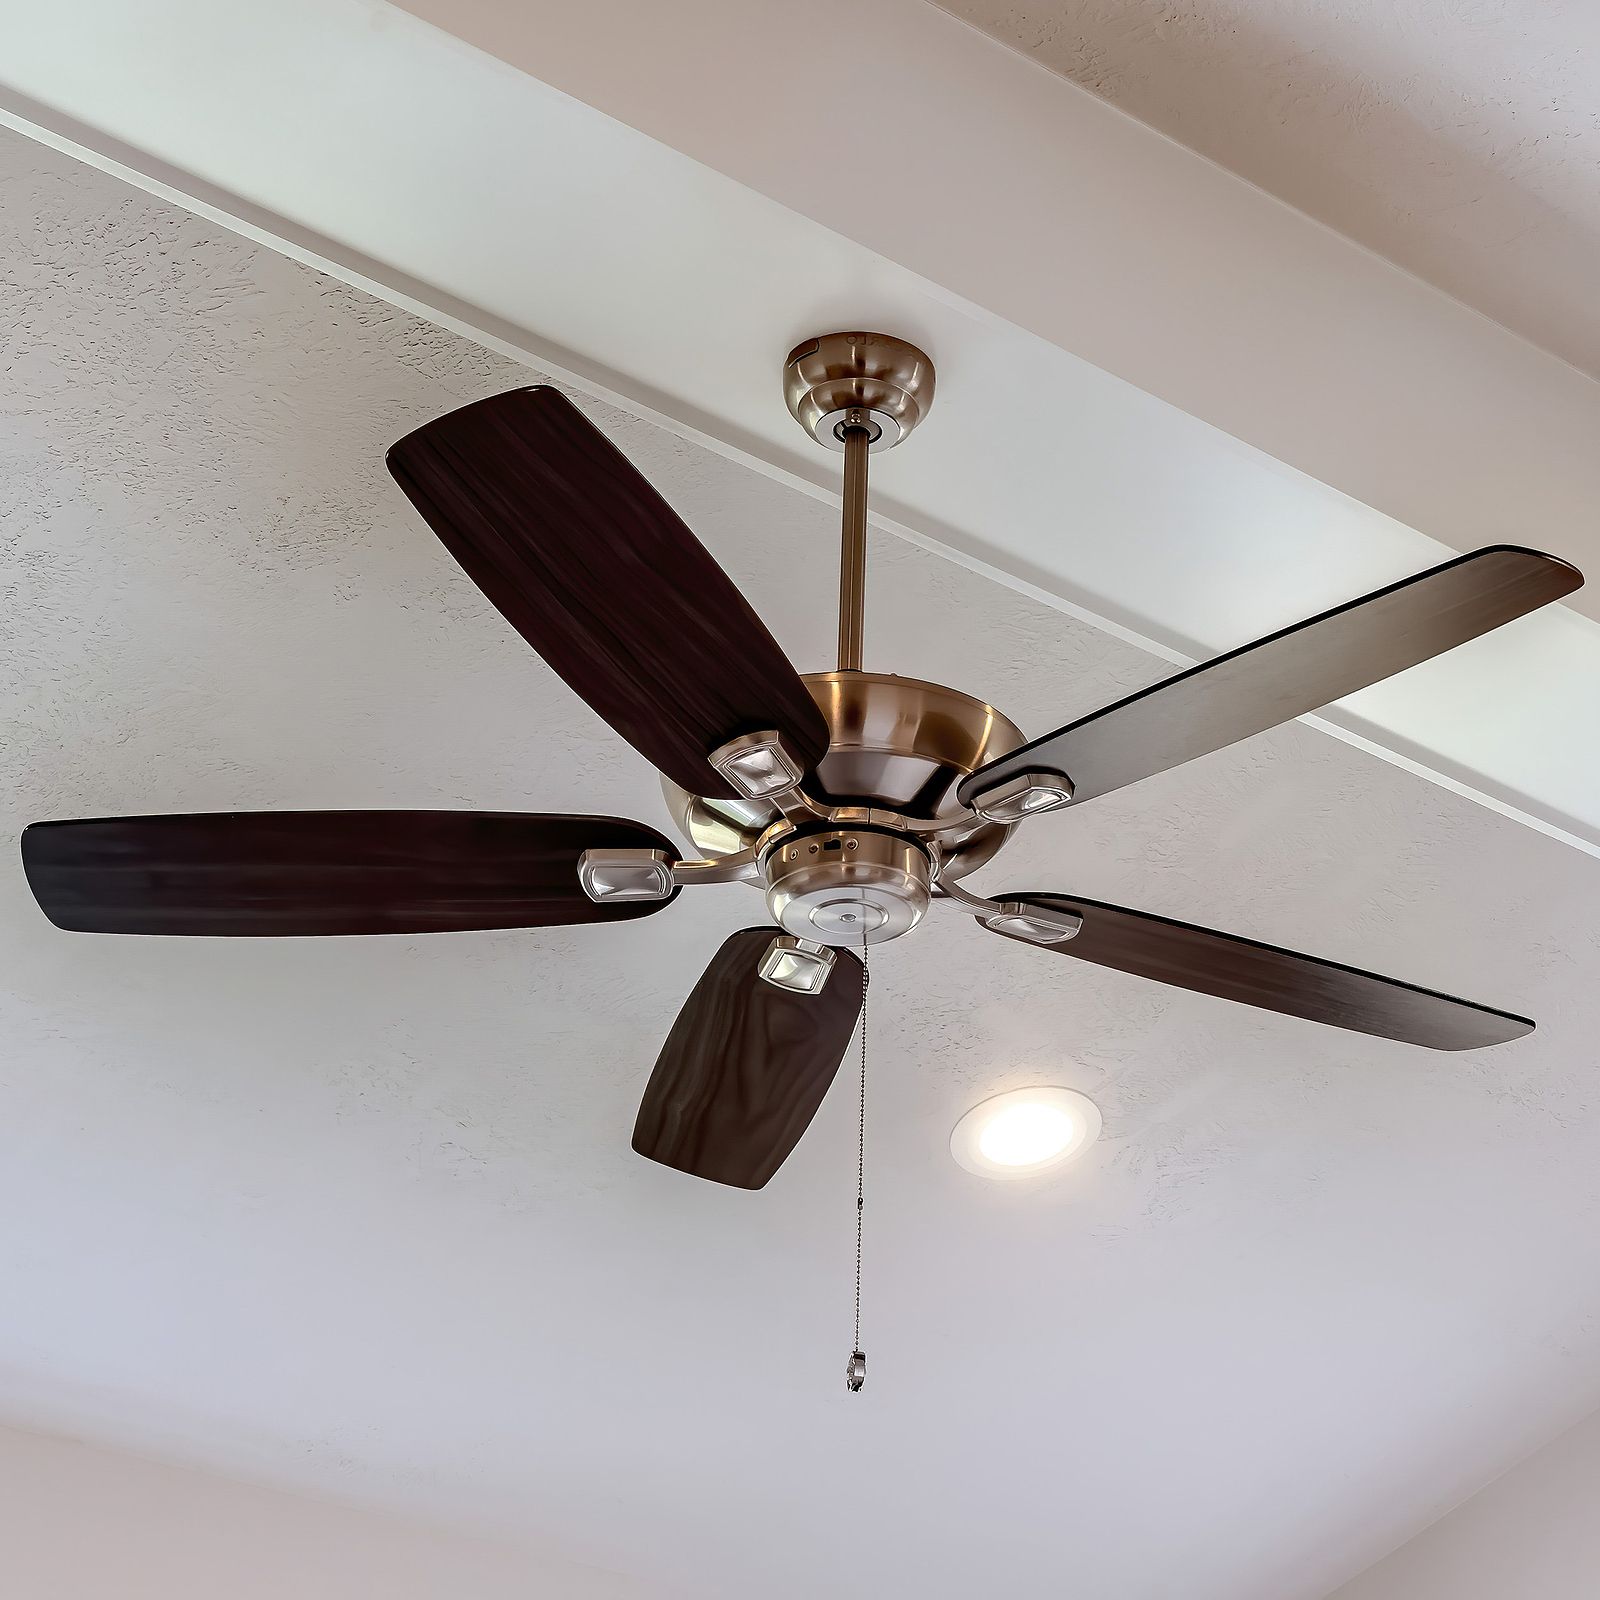 Correctamente Fuera de plazo Encarnar Instalar un ventilador de techo: Recomendaciones